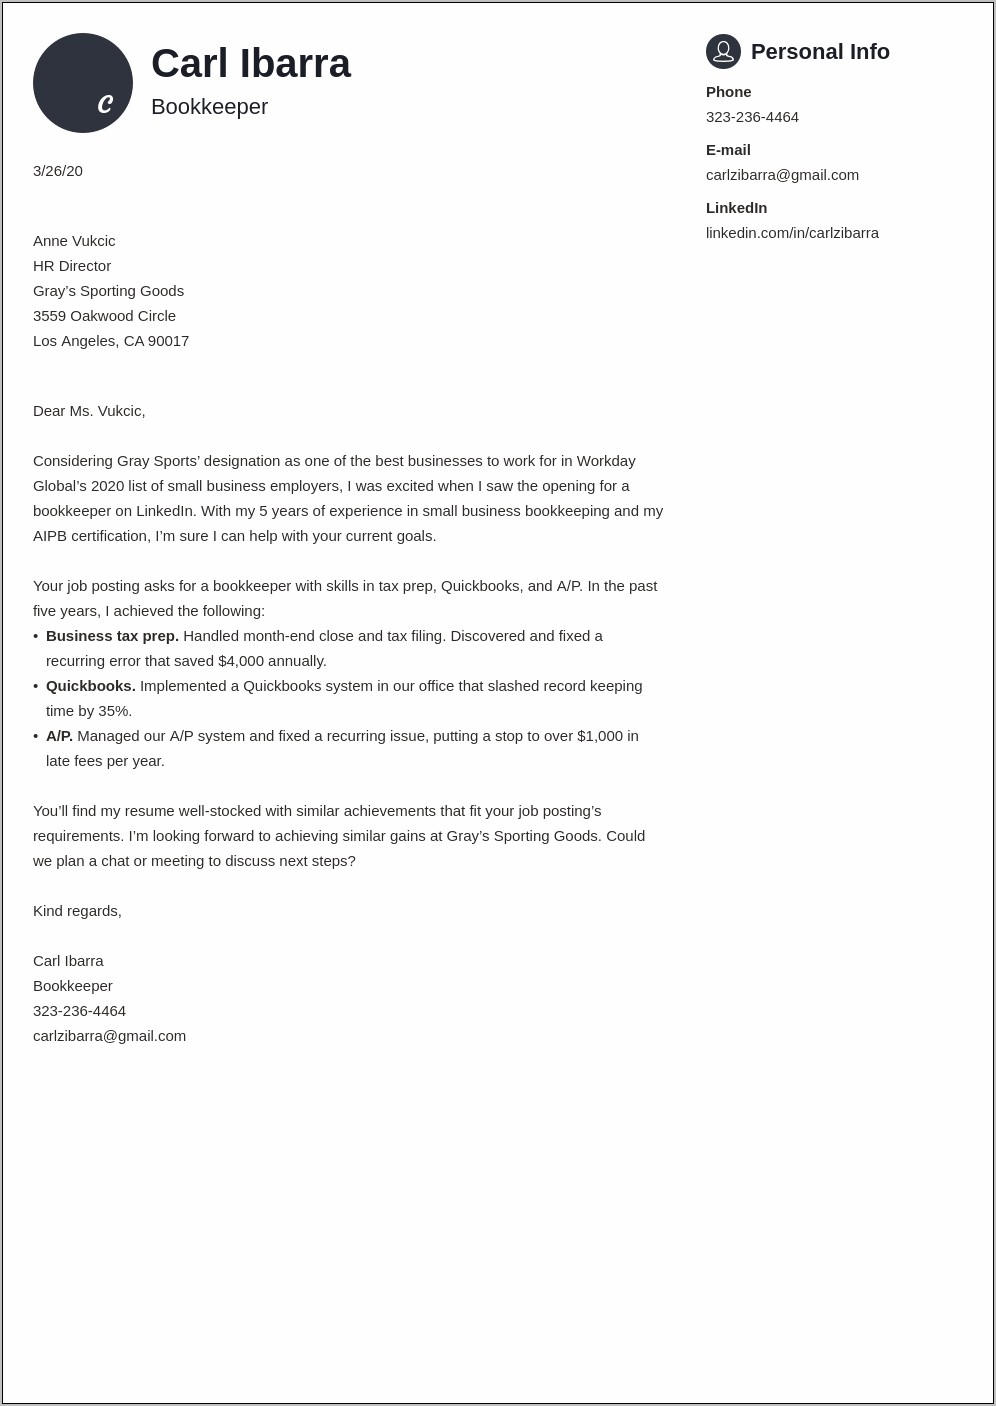 Sample Resume Cover Letter For Bookkeeper